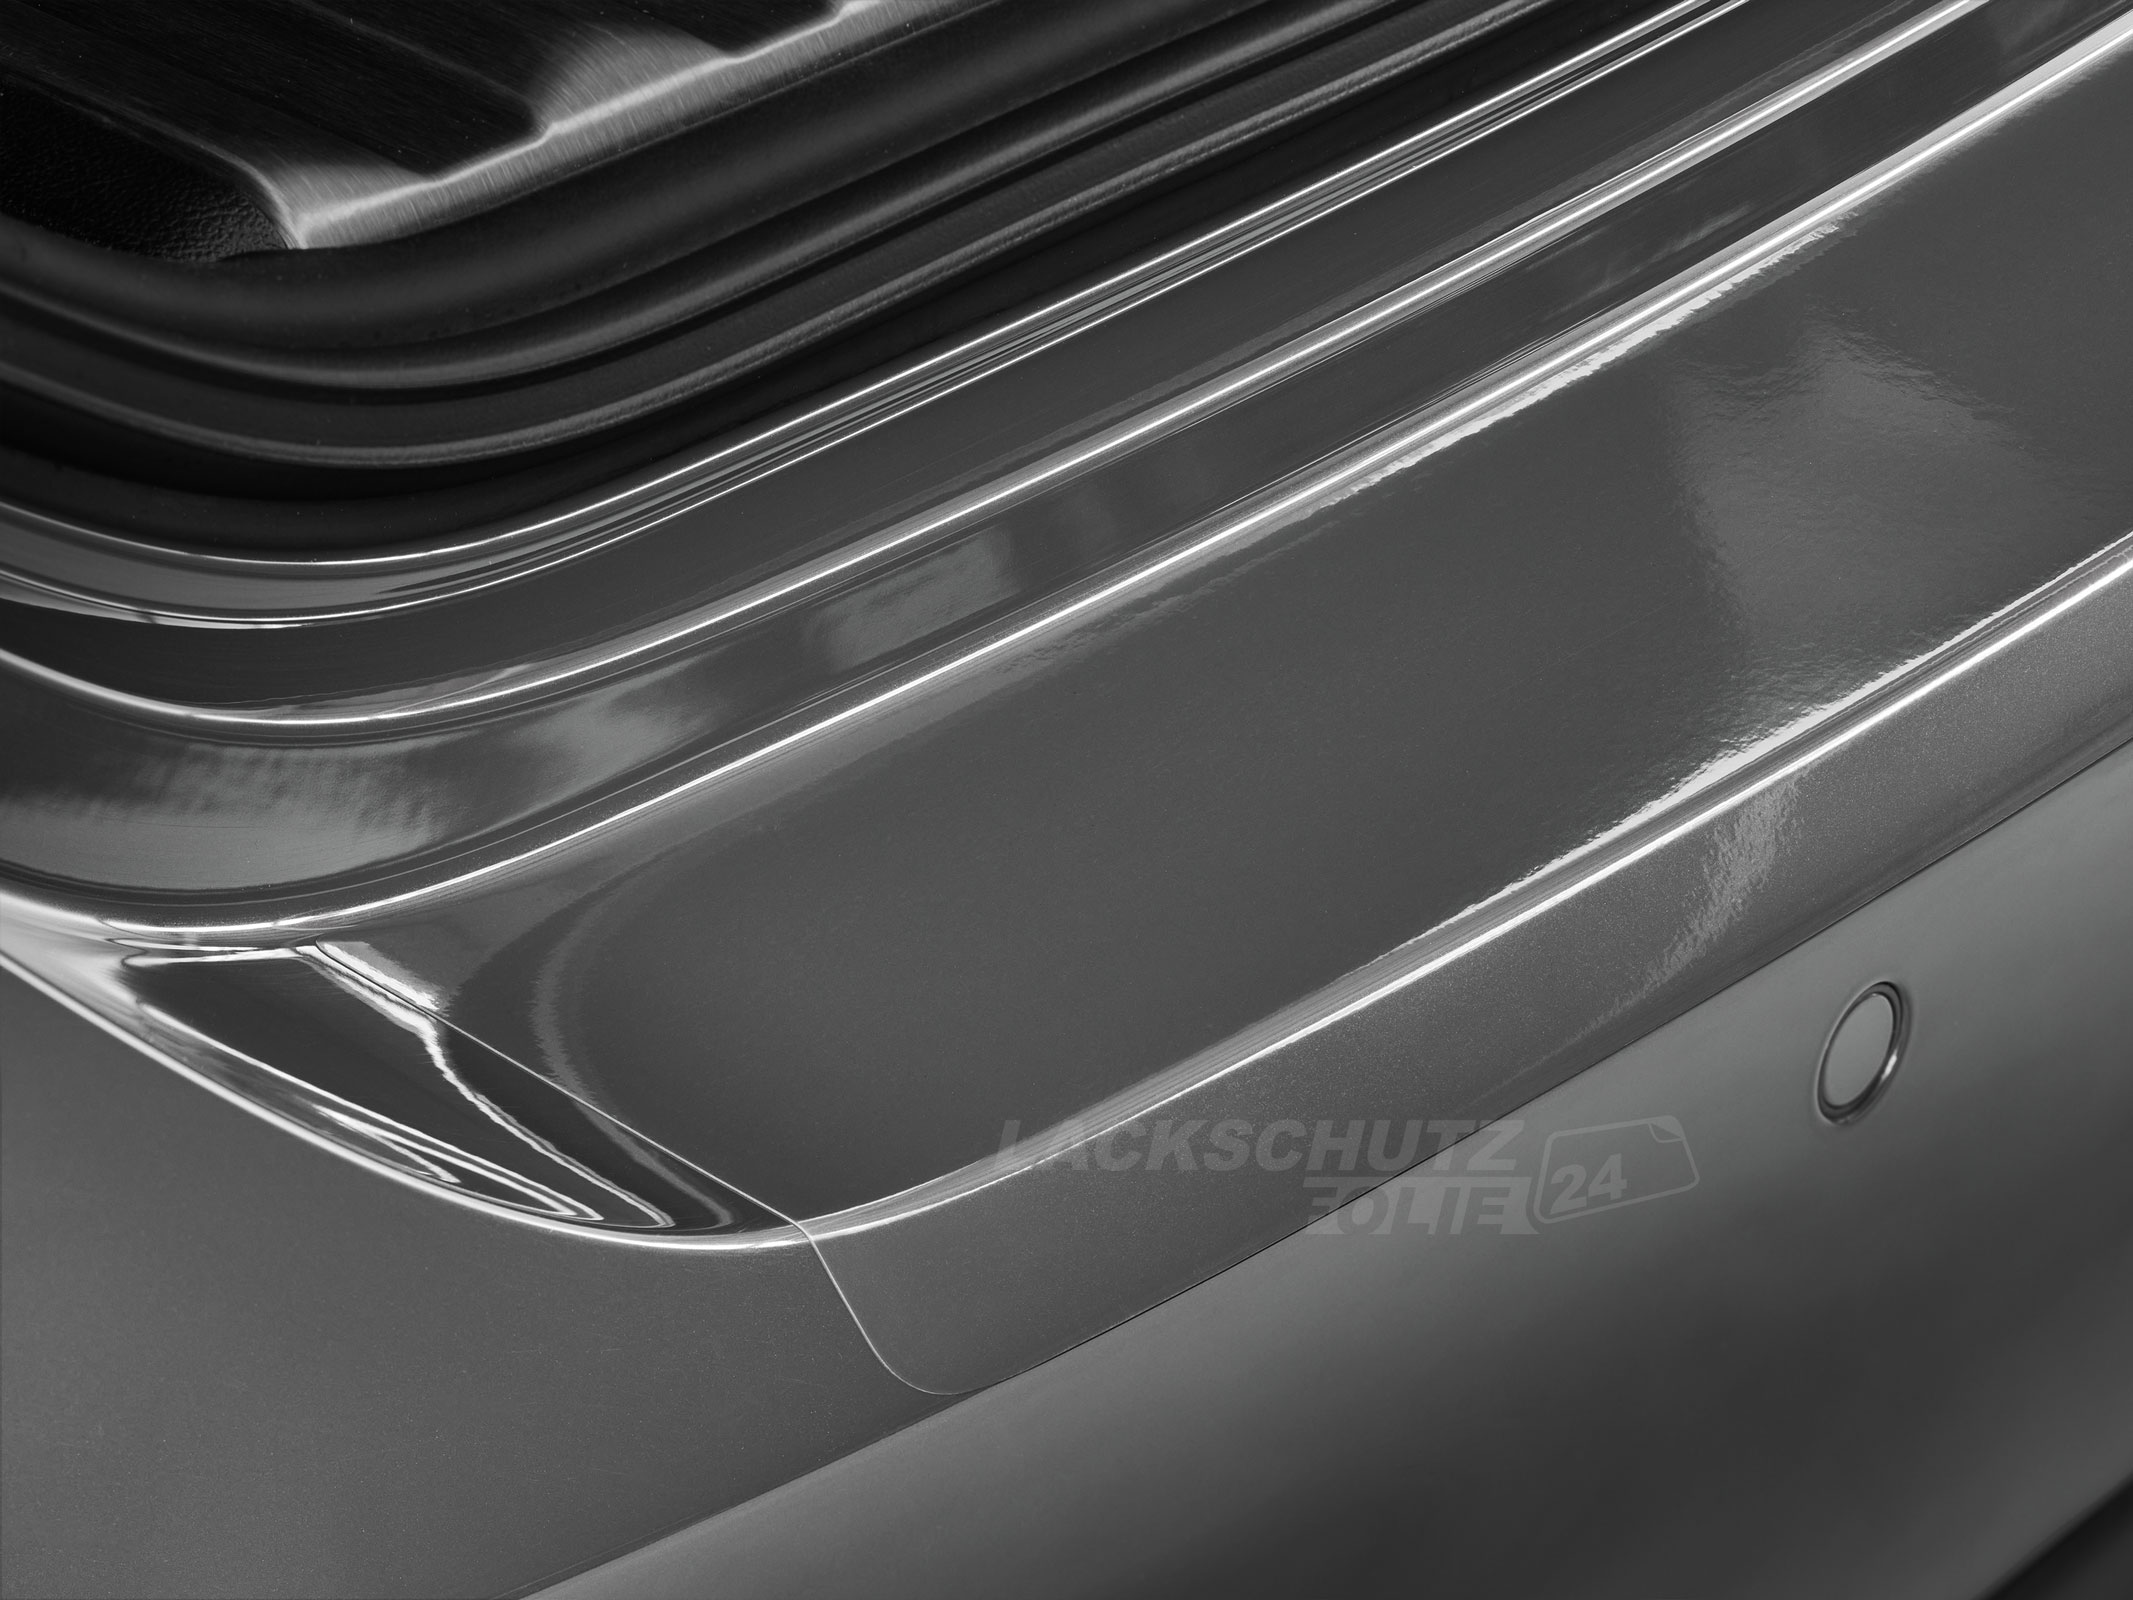 Ladekantenschutzfolie - Transparent Glatt Hochglänzend 150 µm stark für Mazda 3 Schrägheck (IV) ab BJ 03/2019